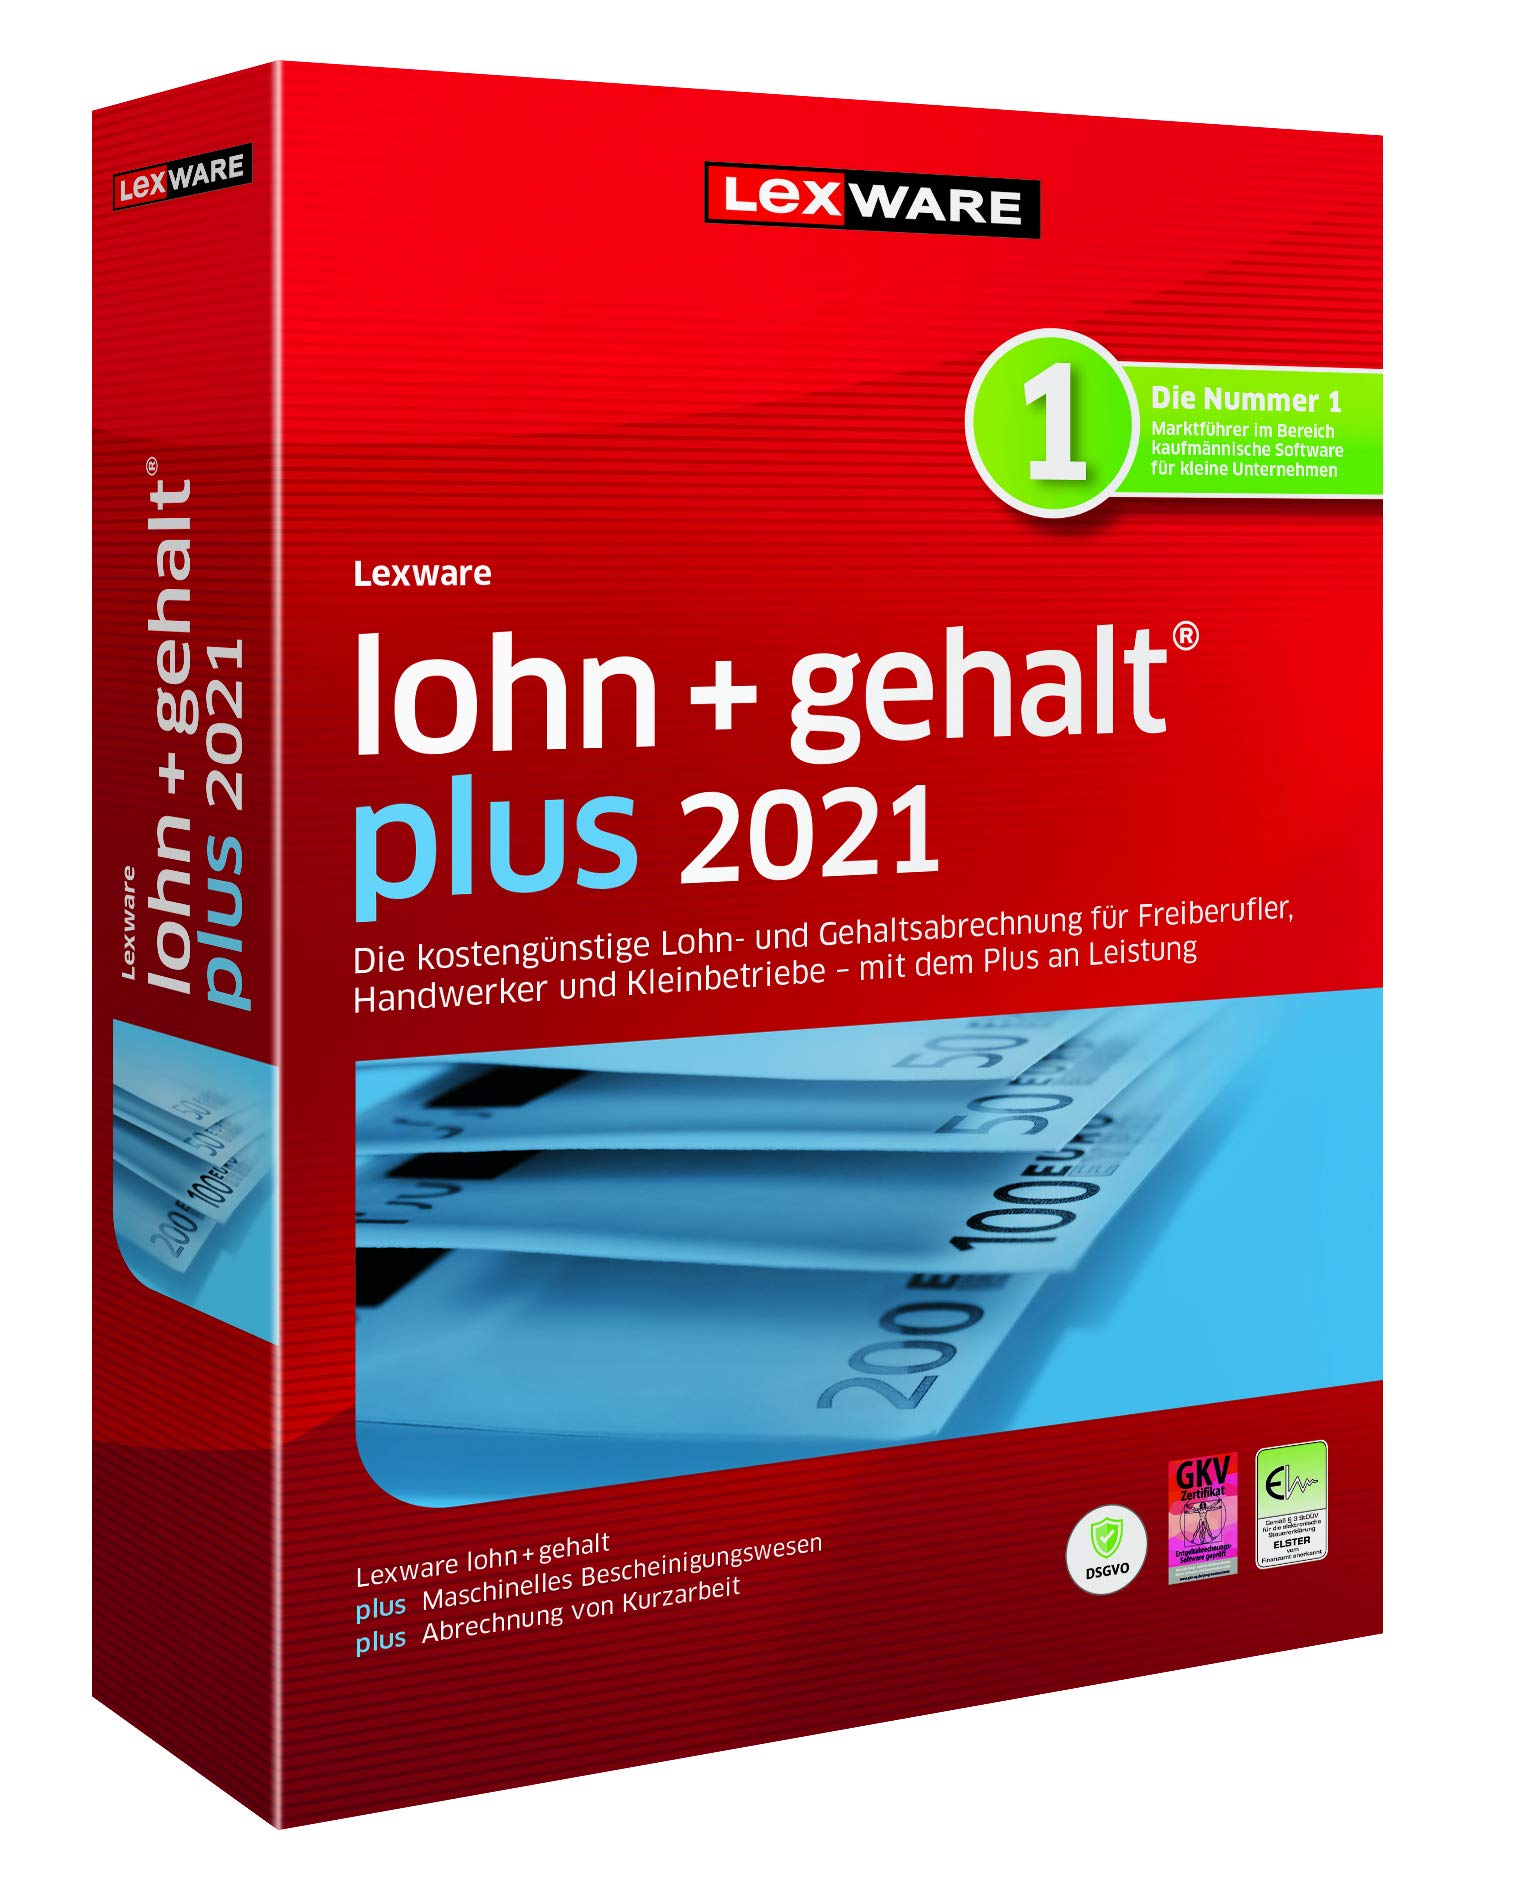 Lexware lohn+gehalt 2021|plus-Version Minibox (Jahreslizenz)|Einfache Lohn- und Gehaltsabrechnungs-Software für Freiberufler|Kompatibel mit Windows 8.1 oder aktueller|Plus|1|1 Jahr|PC|Disc